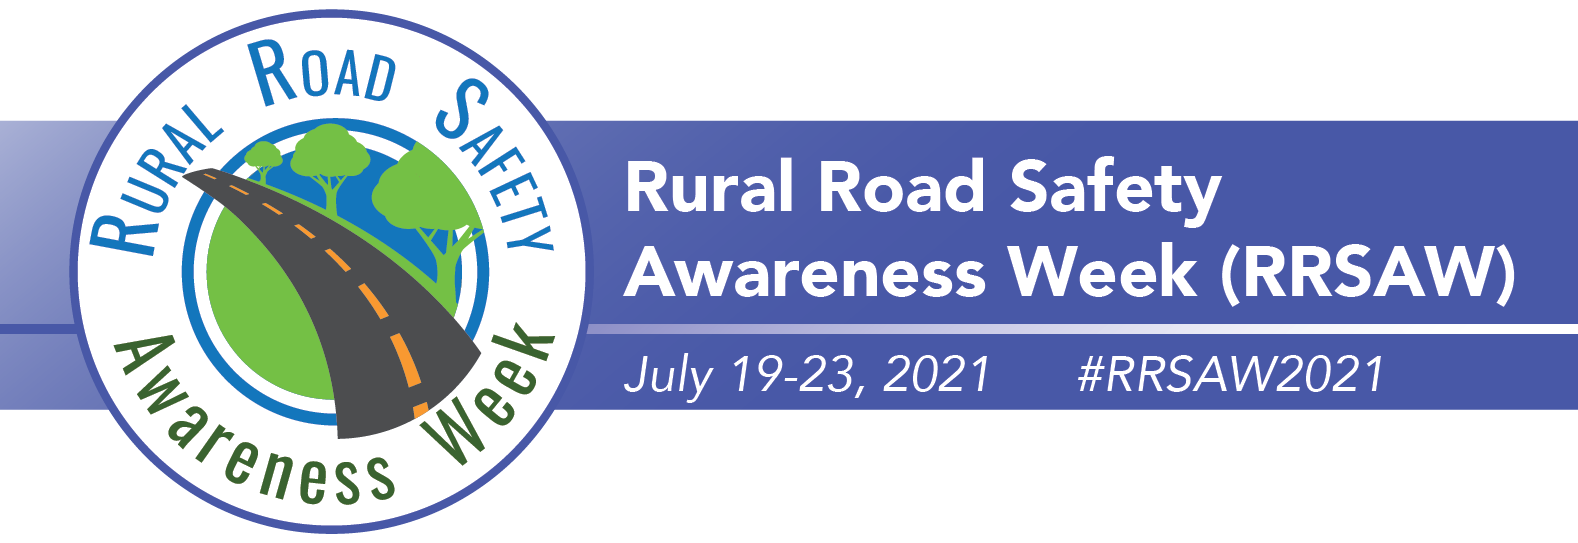 Rural Road Safety Awareness Week